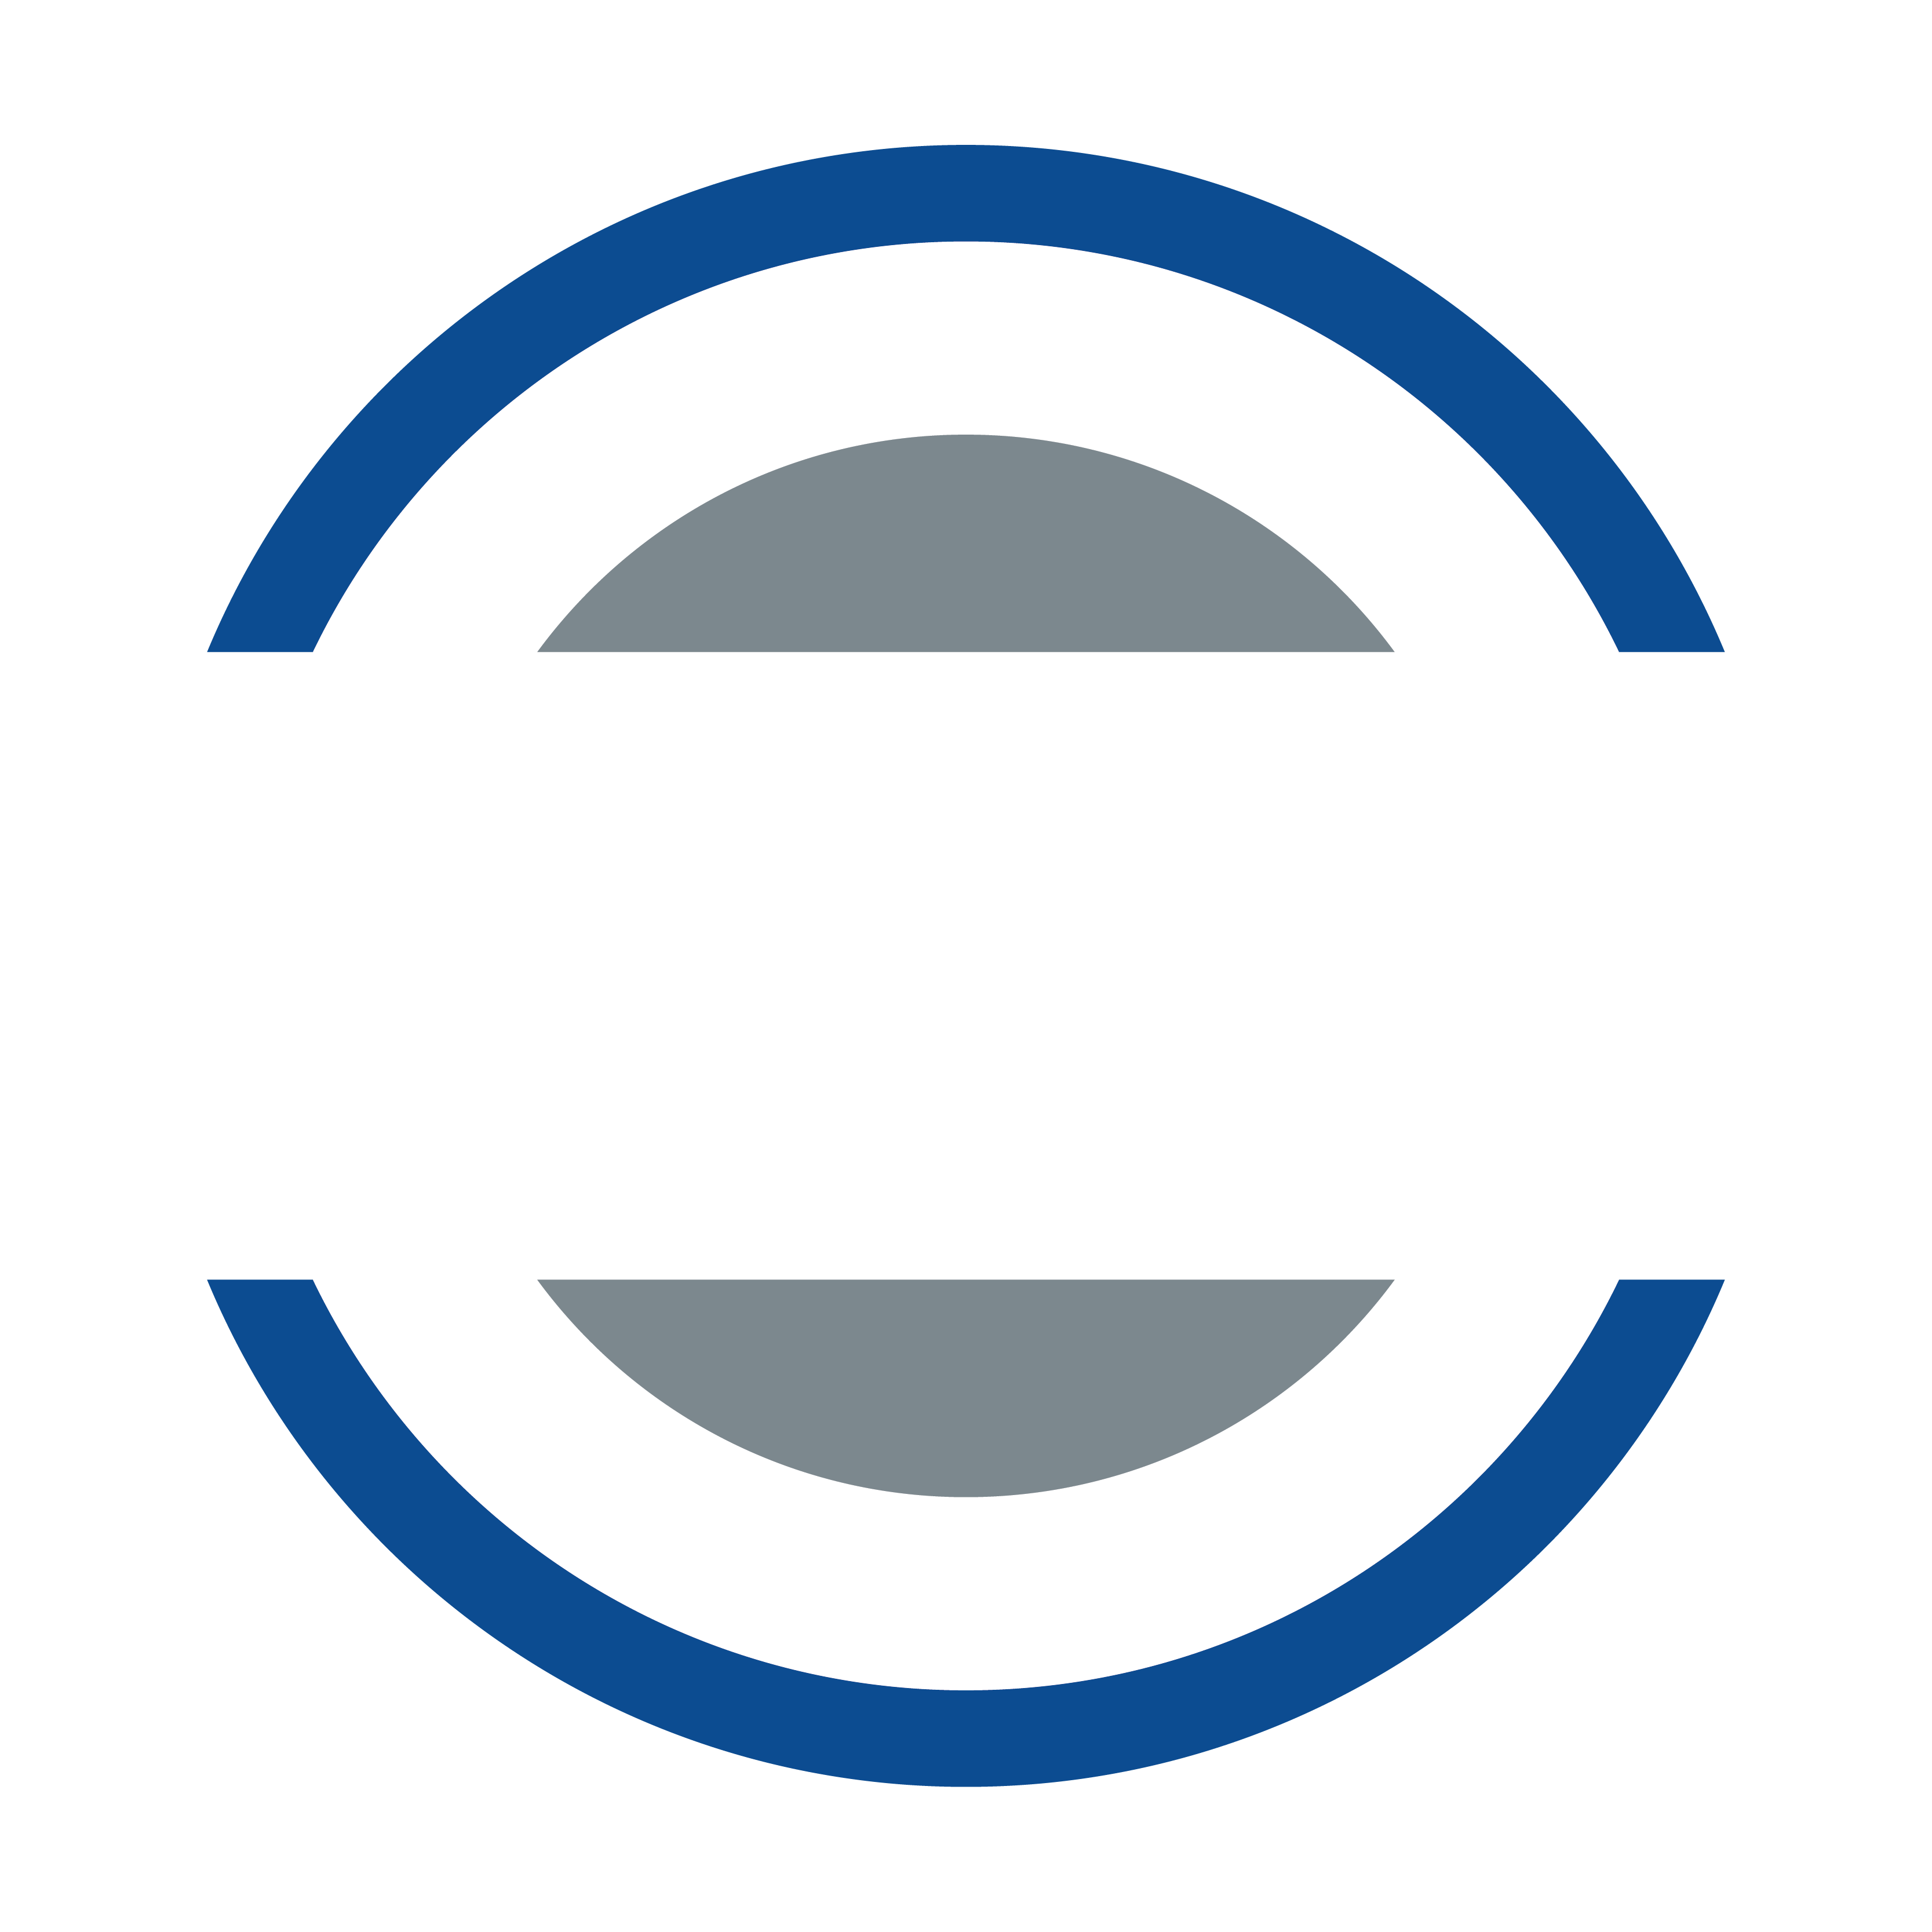 Central Lacrosse